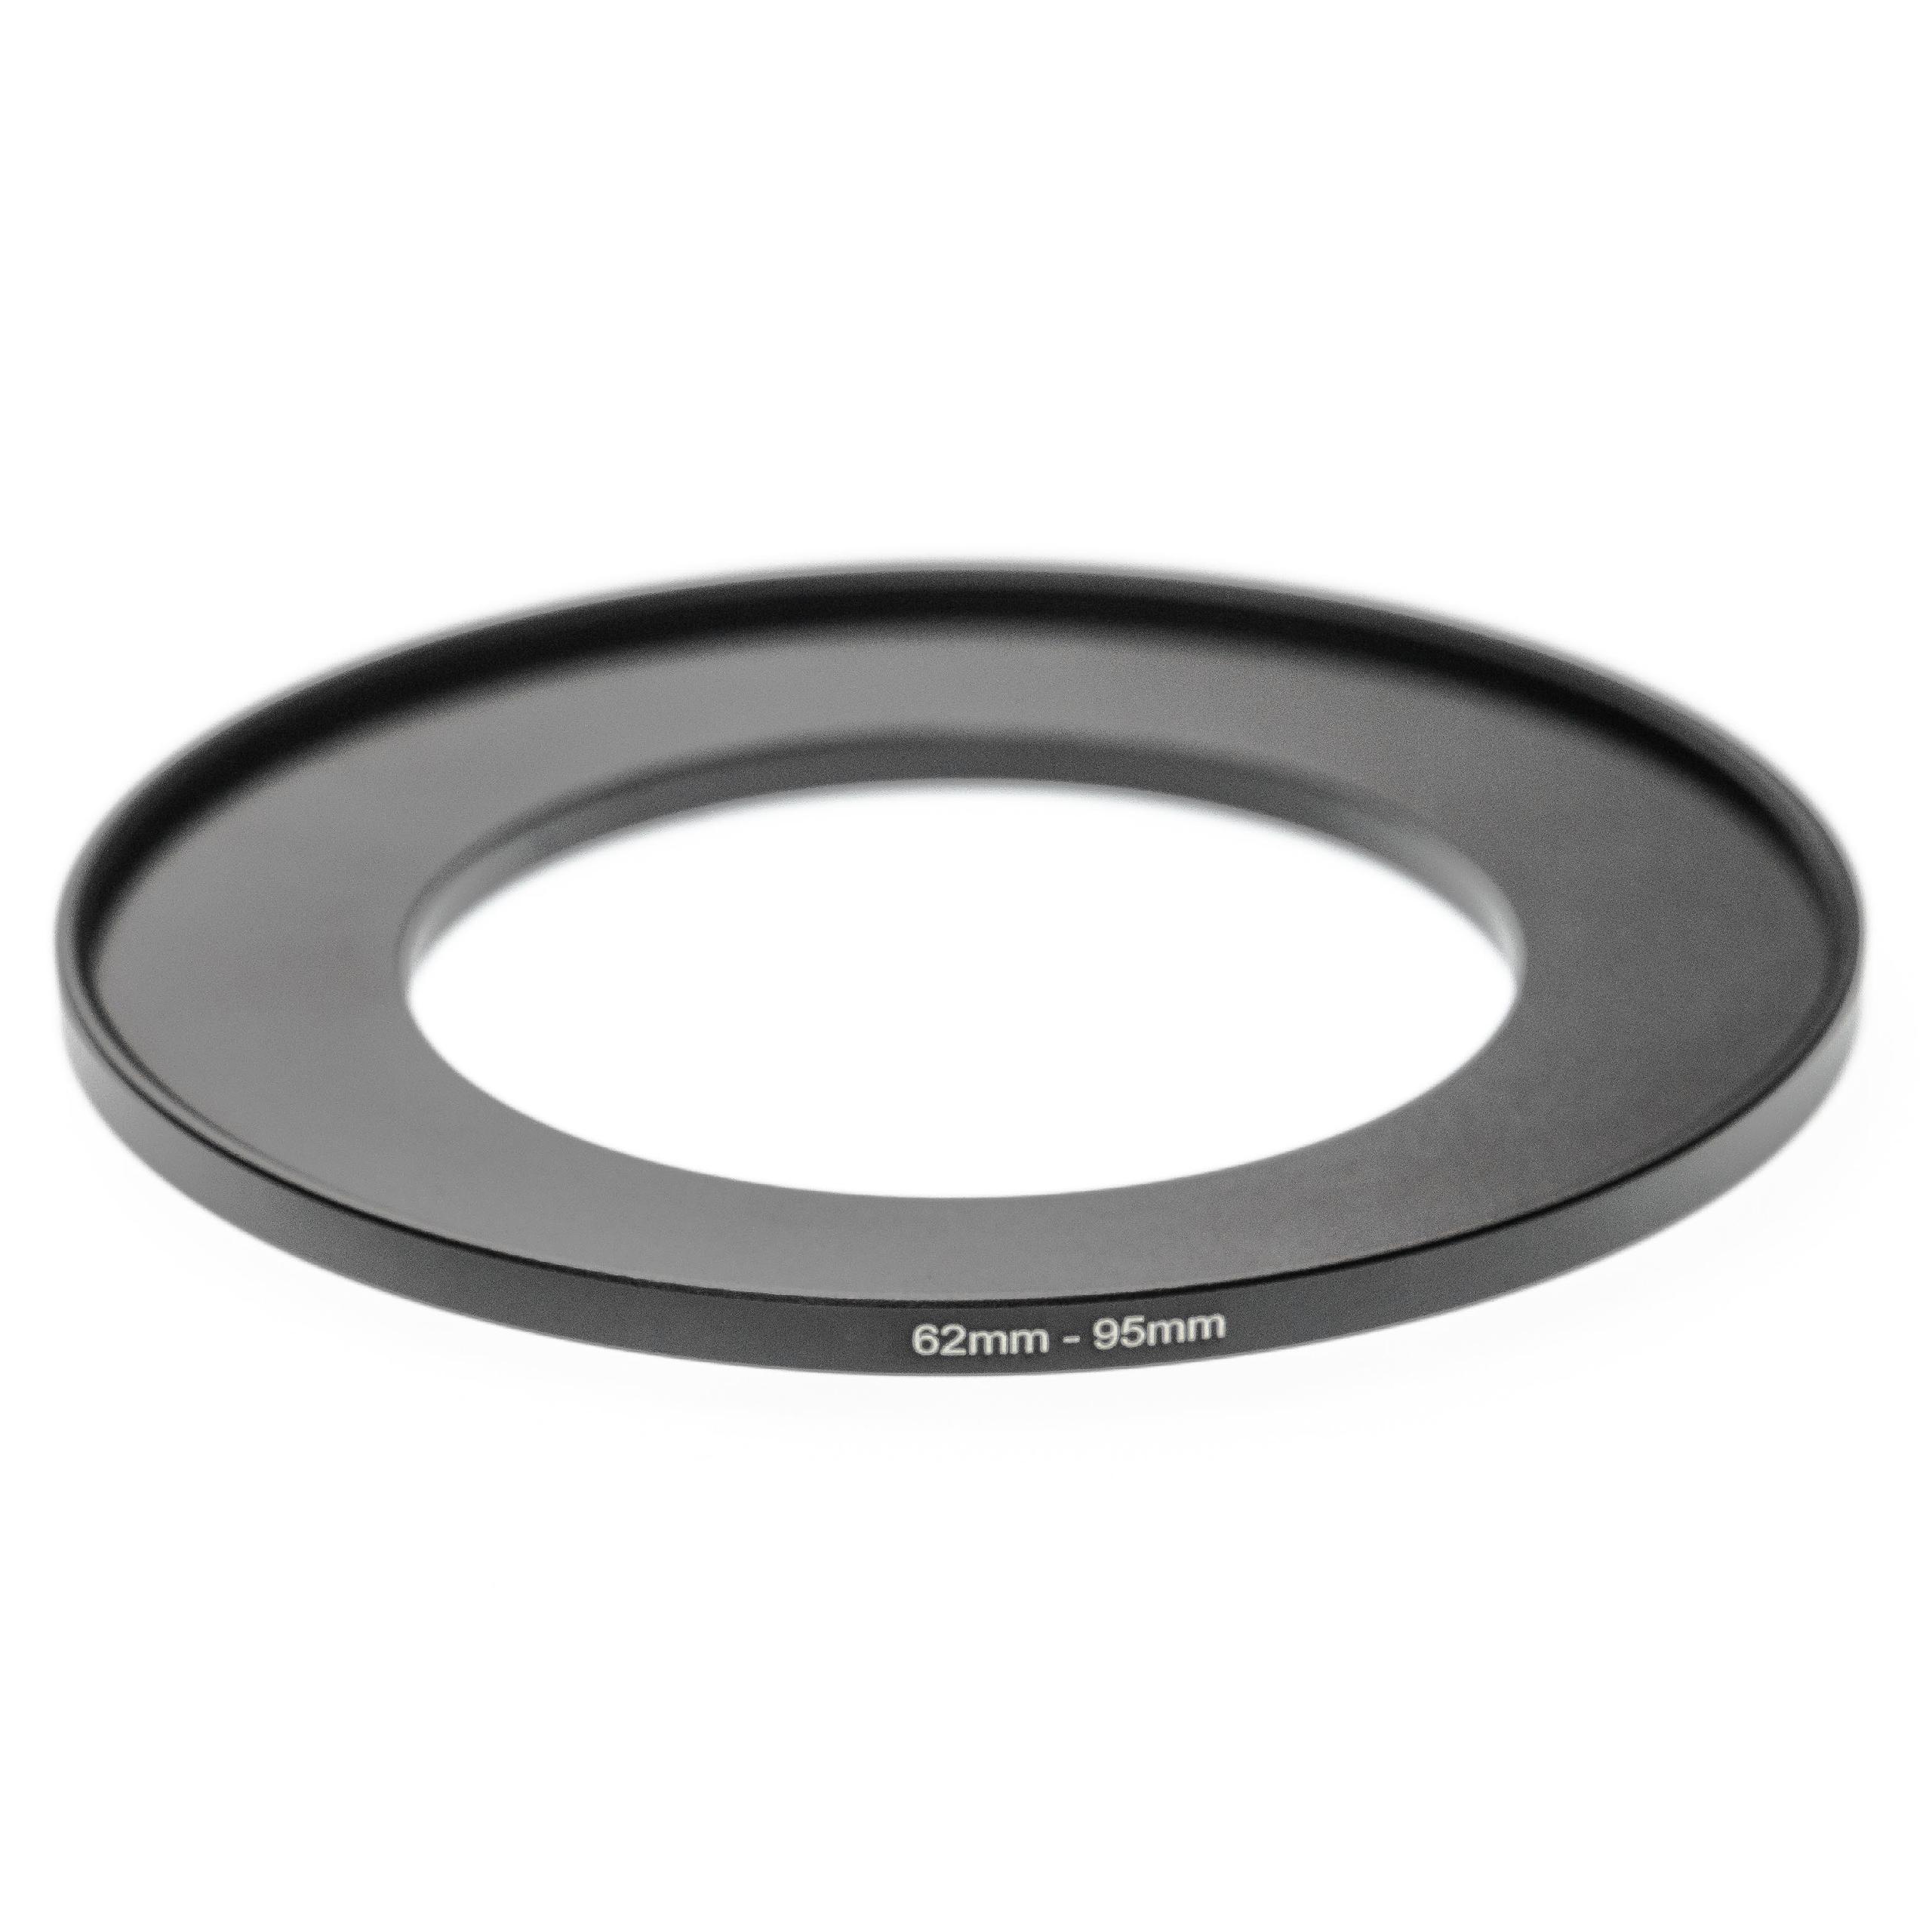 Step-Up-Ring Adapter 62 mm auf 95 mm passend für diverse Kamera-Objektive - Filteradapter